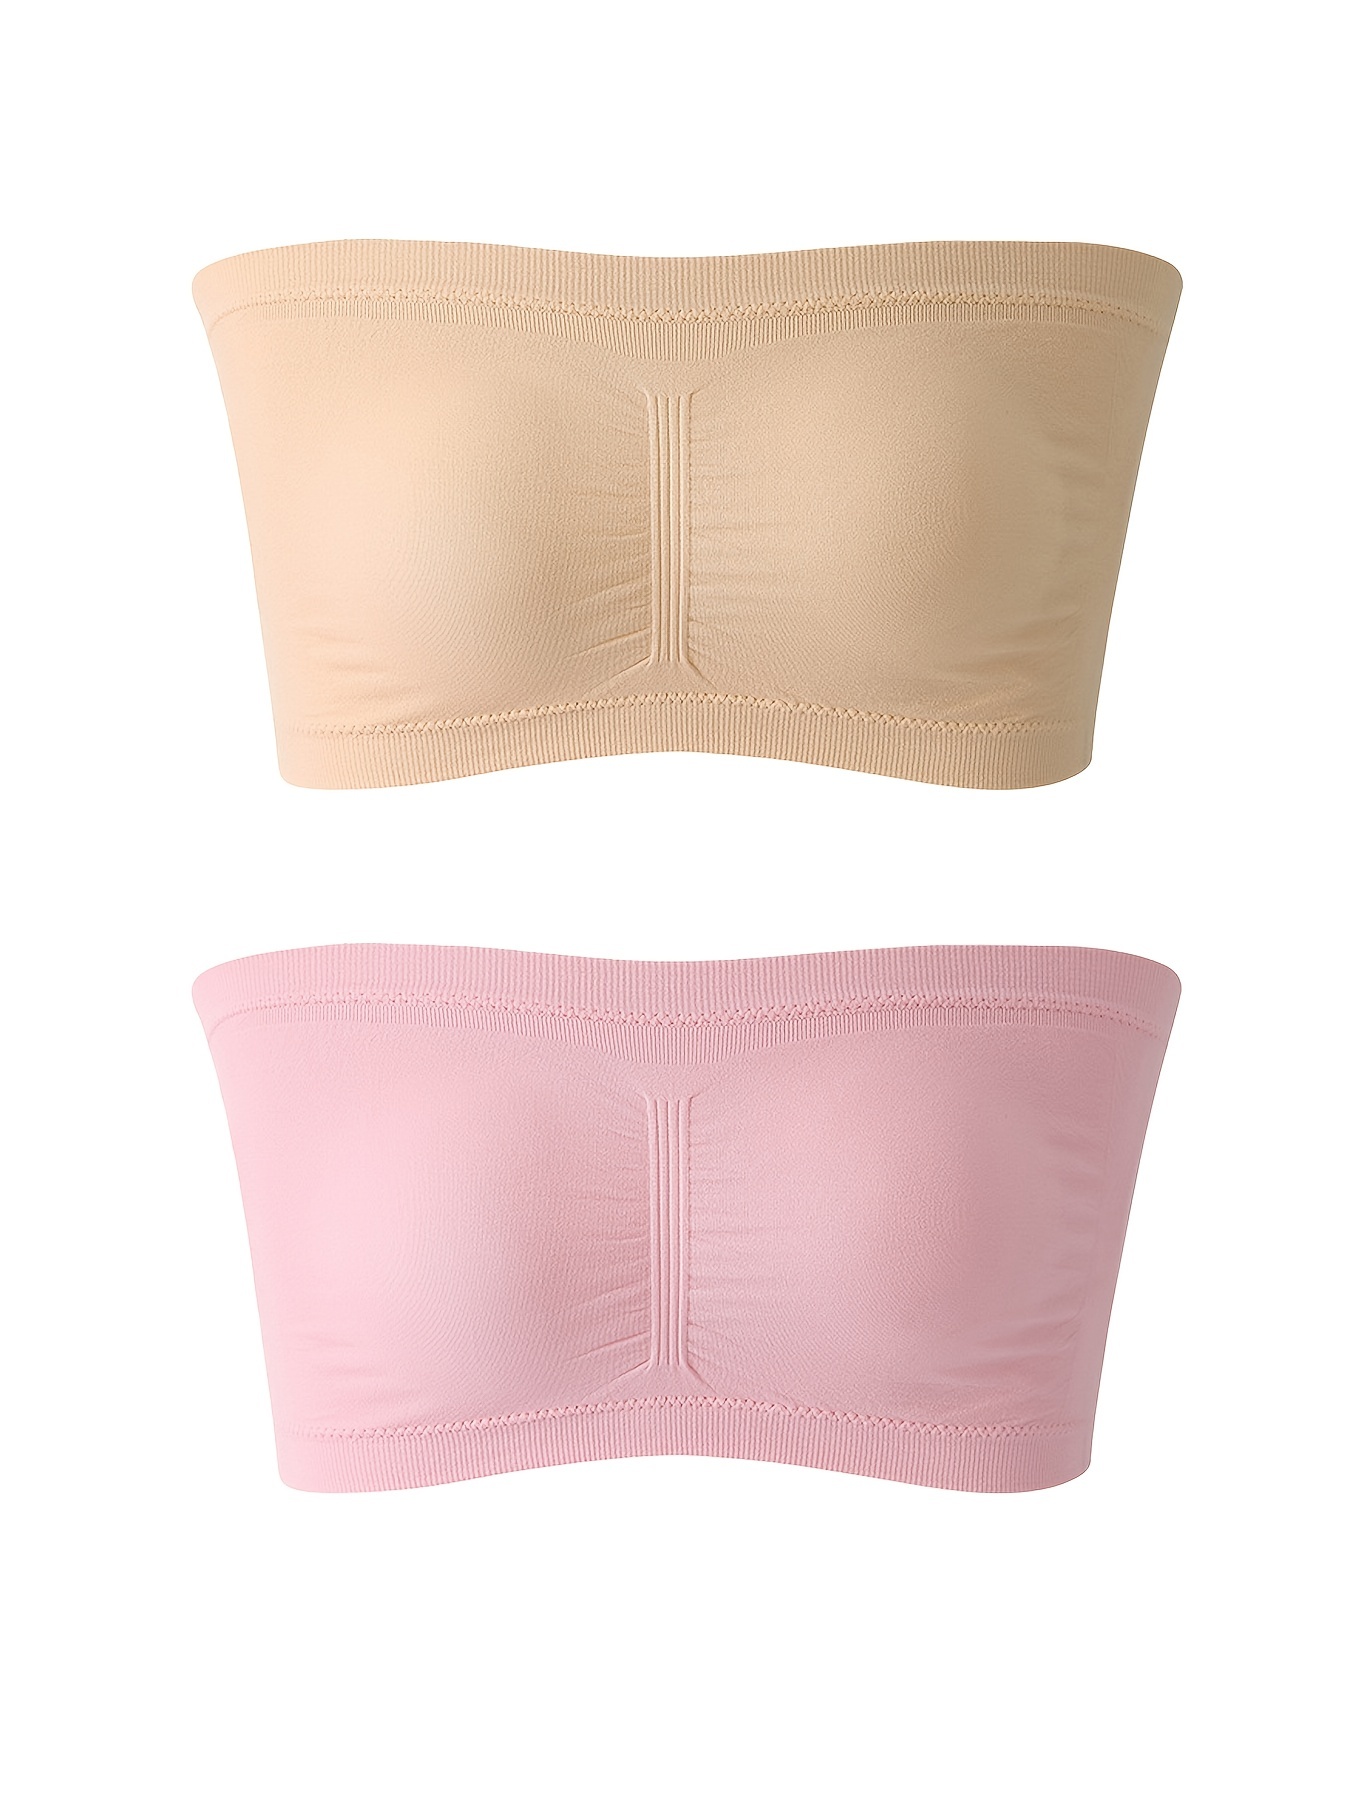 Smilepp Strapless Bras for Women Padded Seamless Undergarment Easy